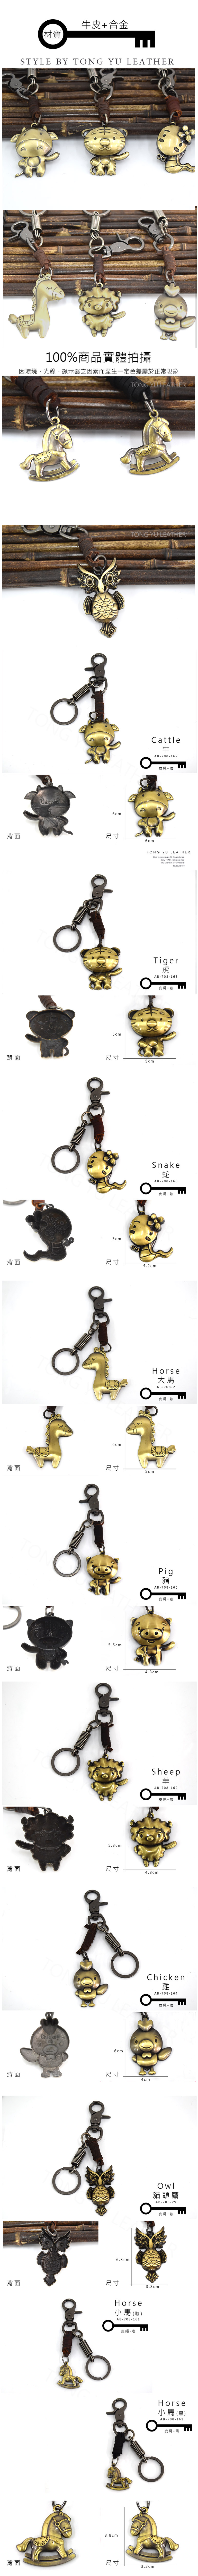 【彤祐TongYu】真皮純銅小鑰匙環動物系列創意鑰匙圈鑰匙環